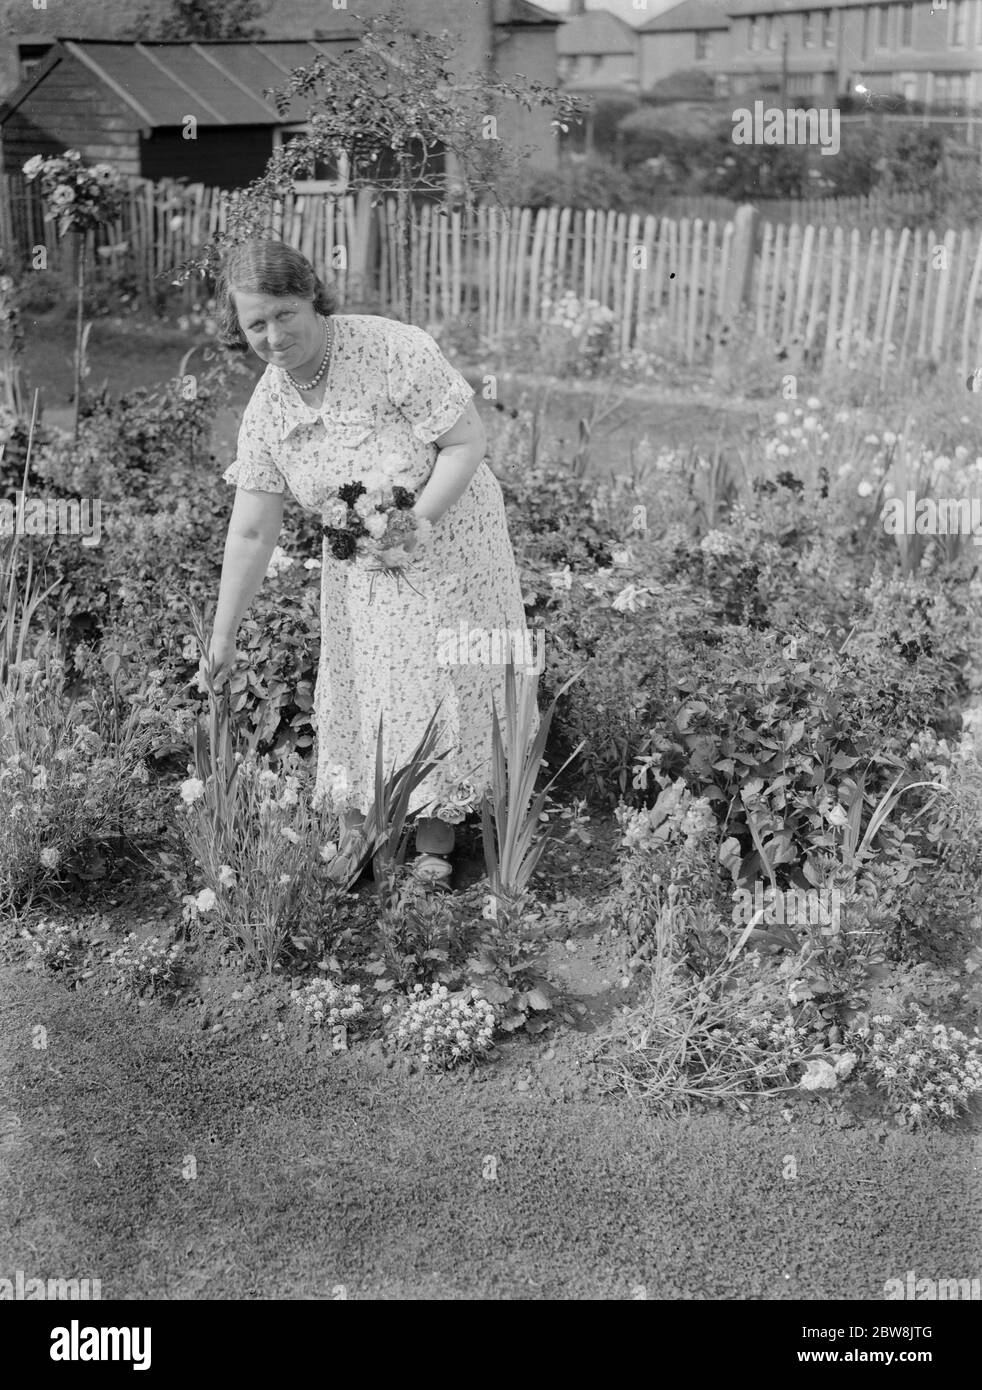 Mme E S Hollands remporte le 1er prix du concours de jardin , Dartford . 1937 Banque D'Images